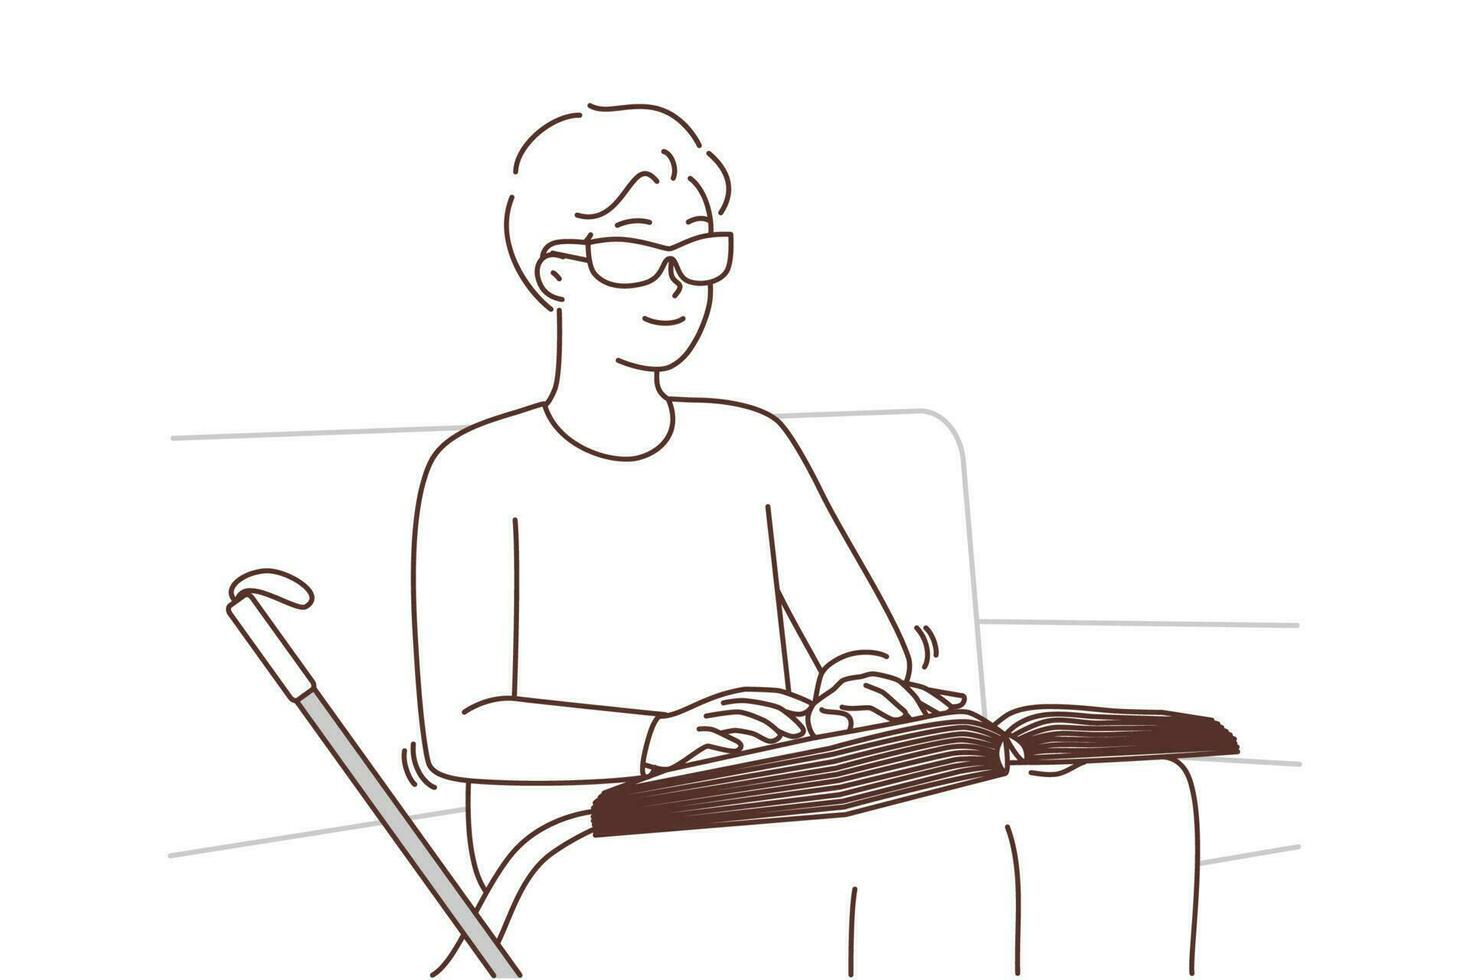 blind Mann lesen Blindenschrift Buch beim heim. lächelnd positiv Kerl im Brille lesen Lehrbuch durch berühren. Blindheit und Behinderung. Vektor Illustration.